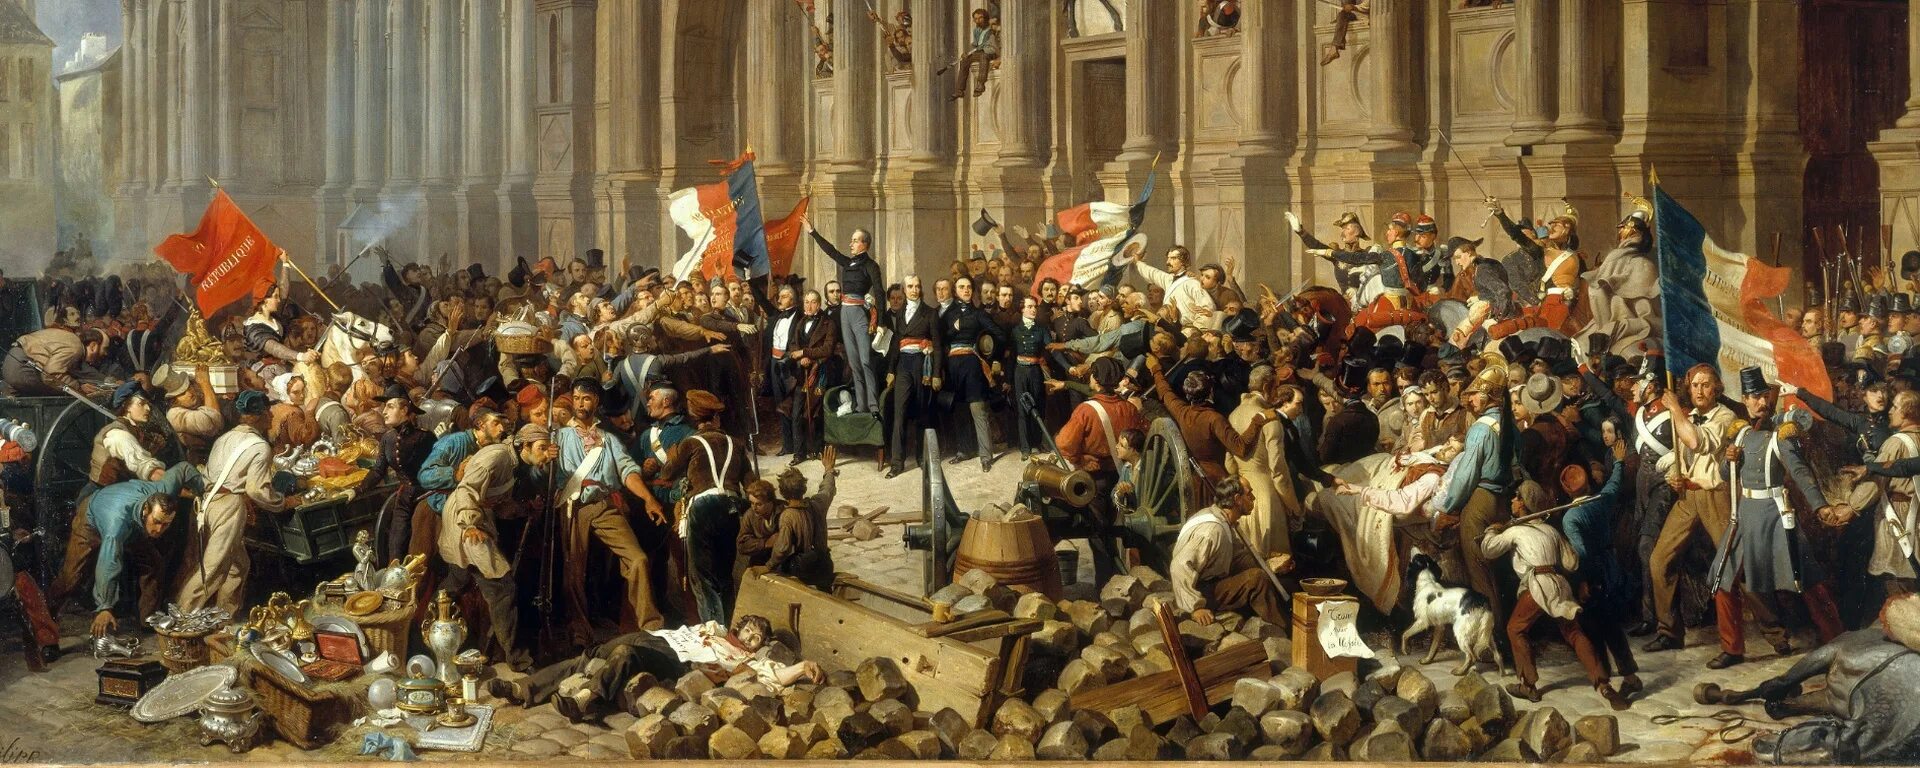 Германский национализм 19 век. Германская революция 1848. Революция 1848 года во Франции. Буржуазная революция в Германии.